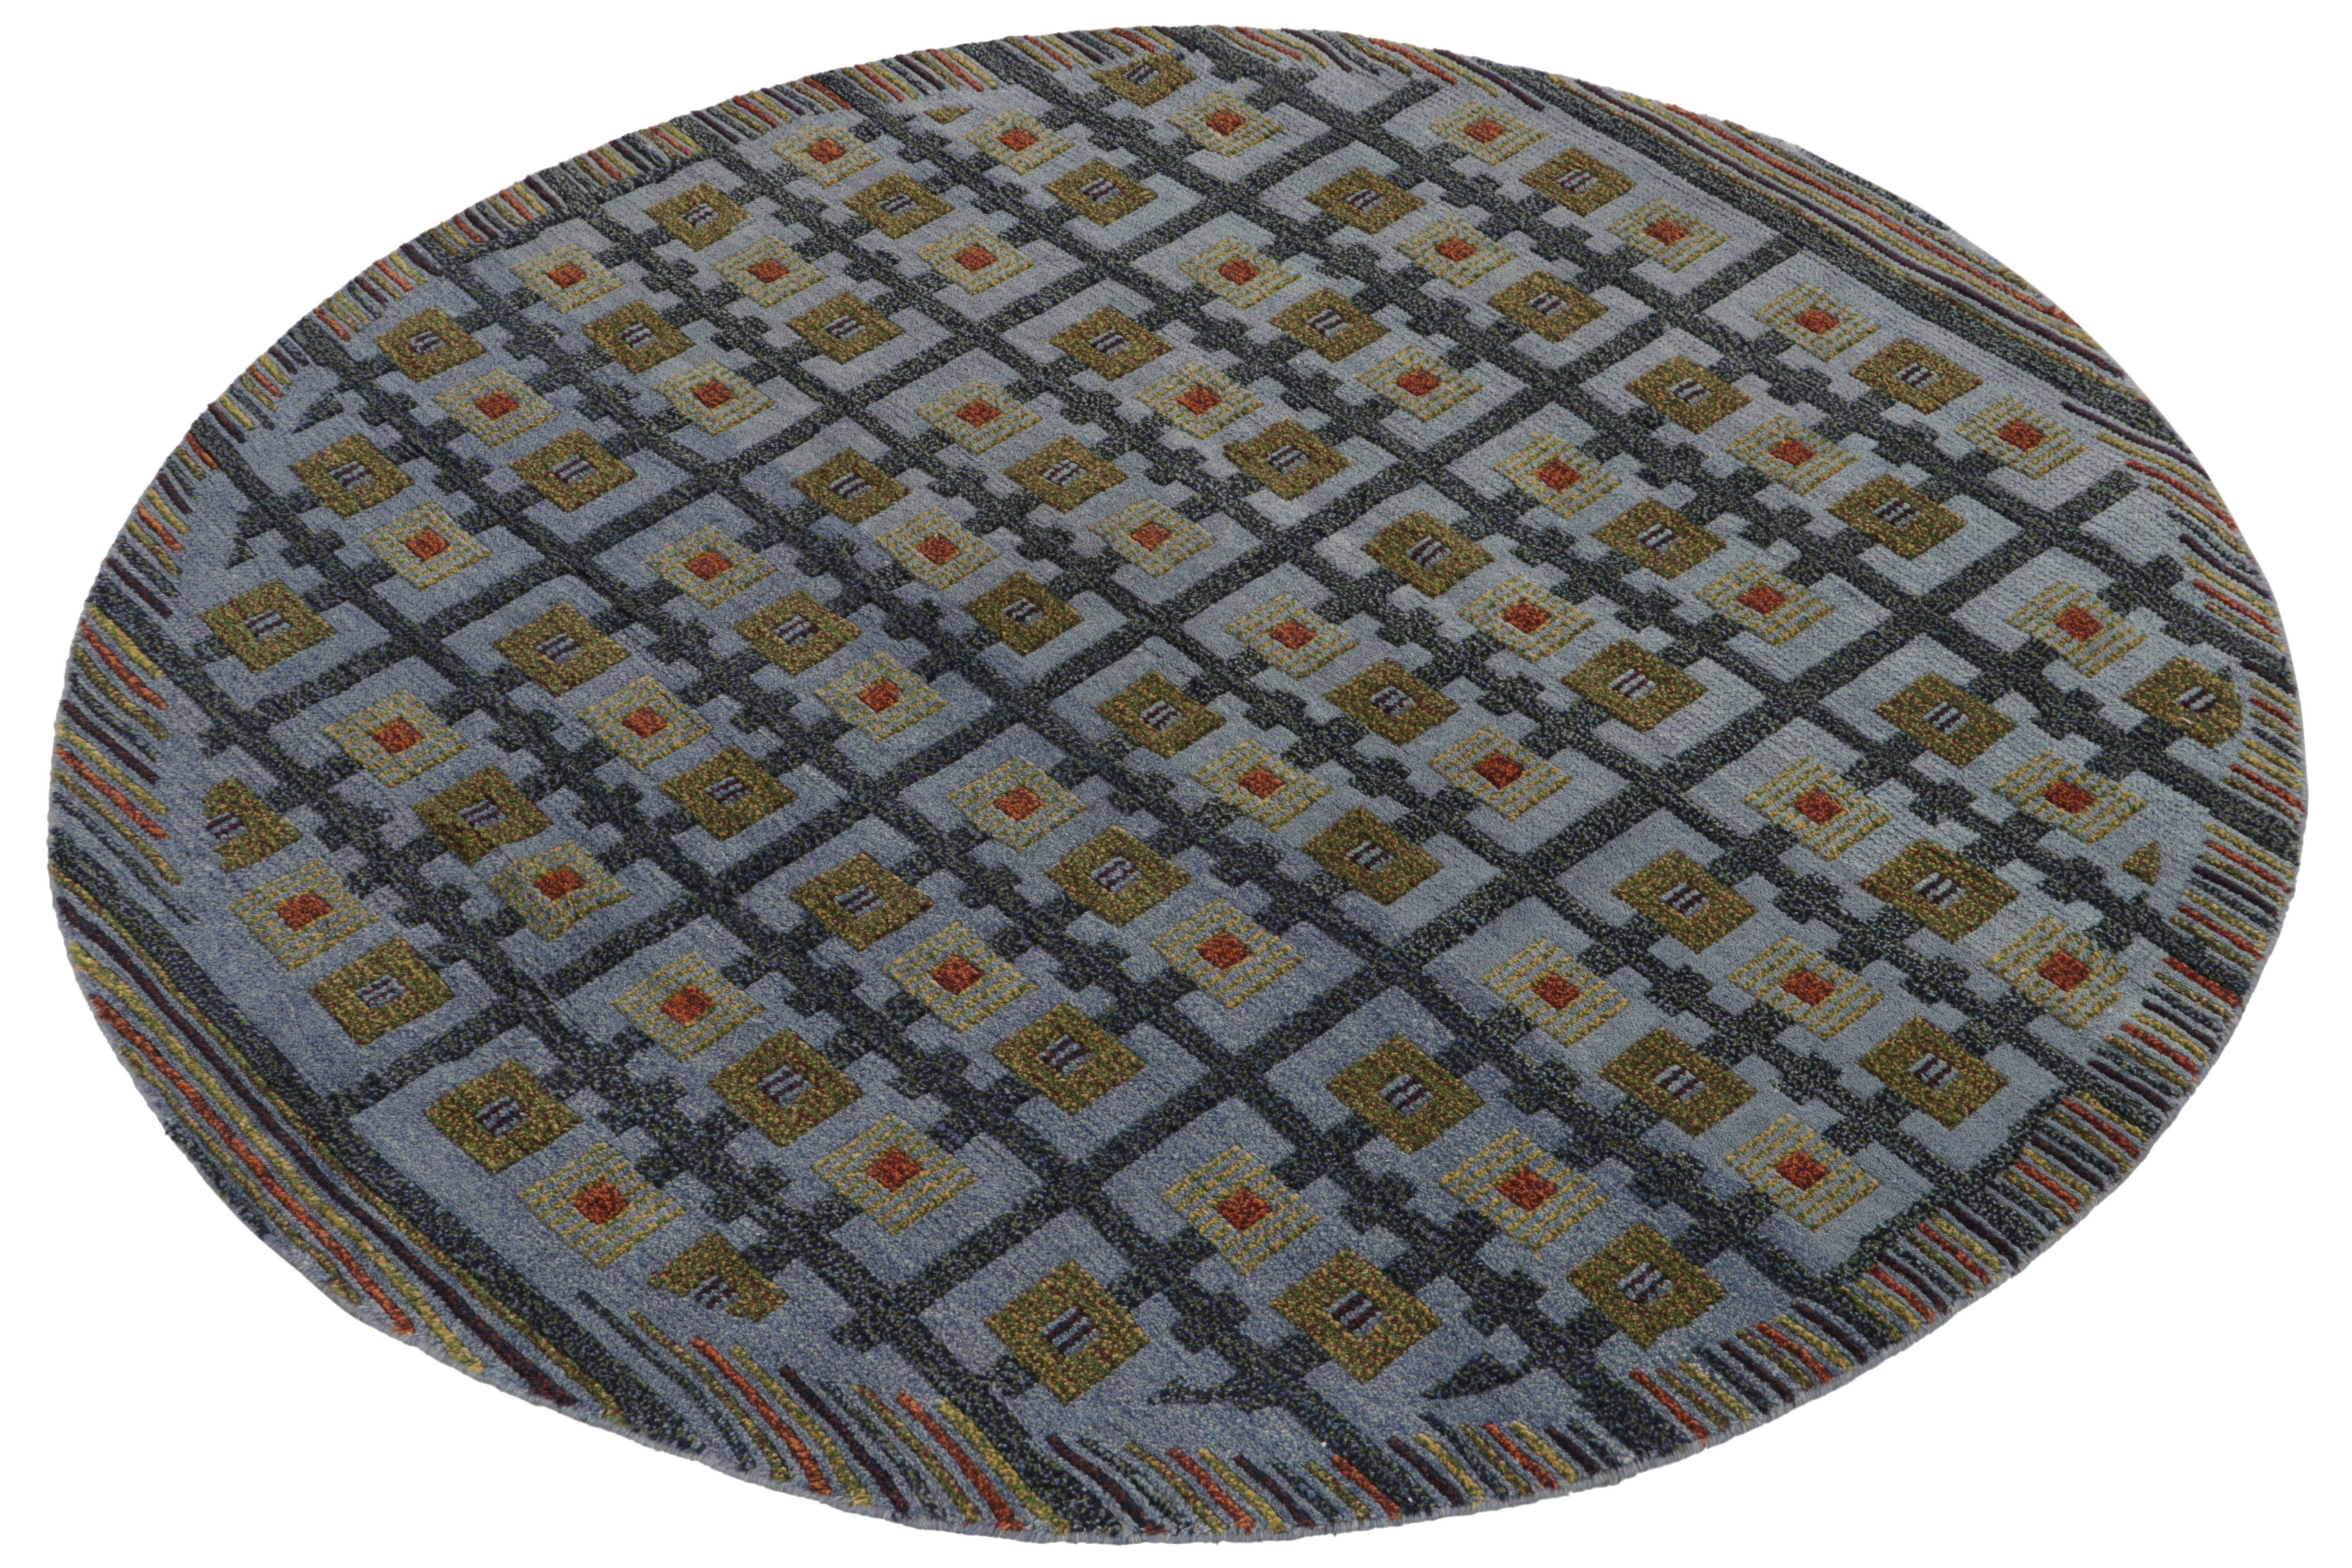 Ein eleganter kreisförmiger Teppich im Art-Déco-Stil aus der preisgekrönten skandinavischen Kilim-Kollektion von Rug & Kilim. Dieses besondere 8'-Stück ist ein Beispiel für die strukturelle Sensibilität der Linie, da es das geometrische Muster im